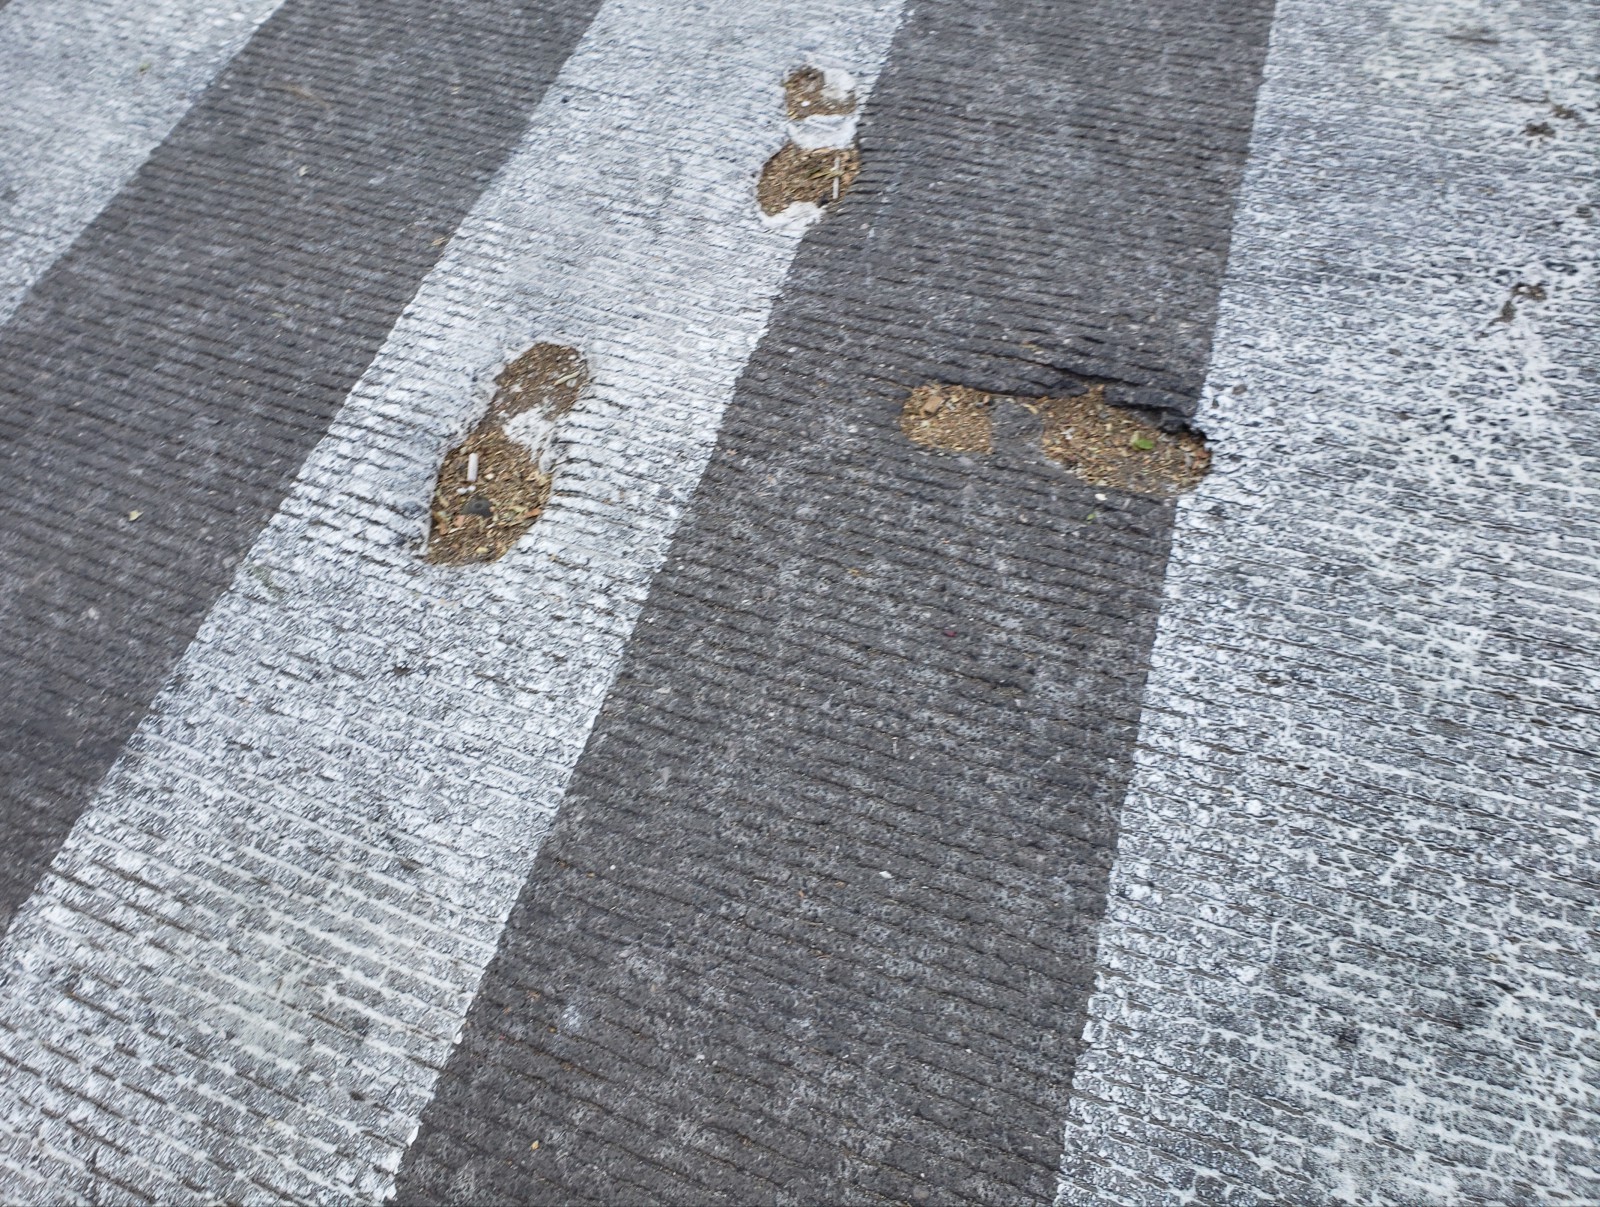 © Peter Krieger, *Footprints,* Mexiko-Stadt, 2020.